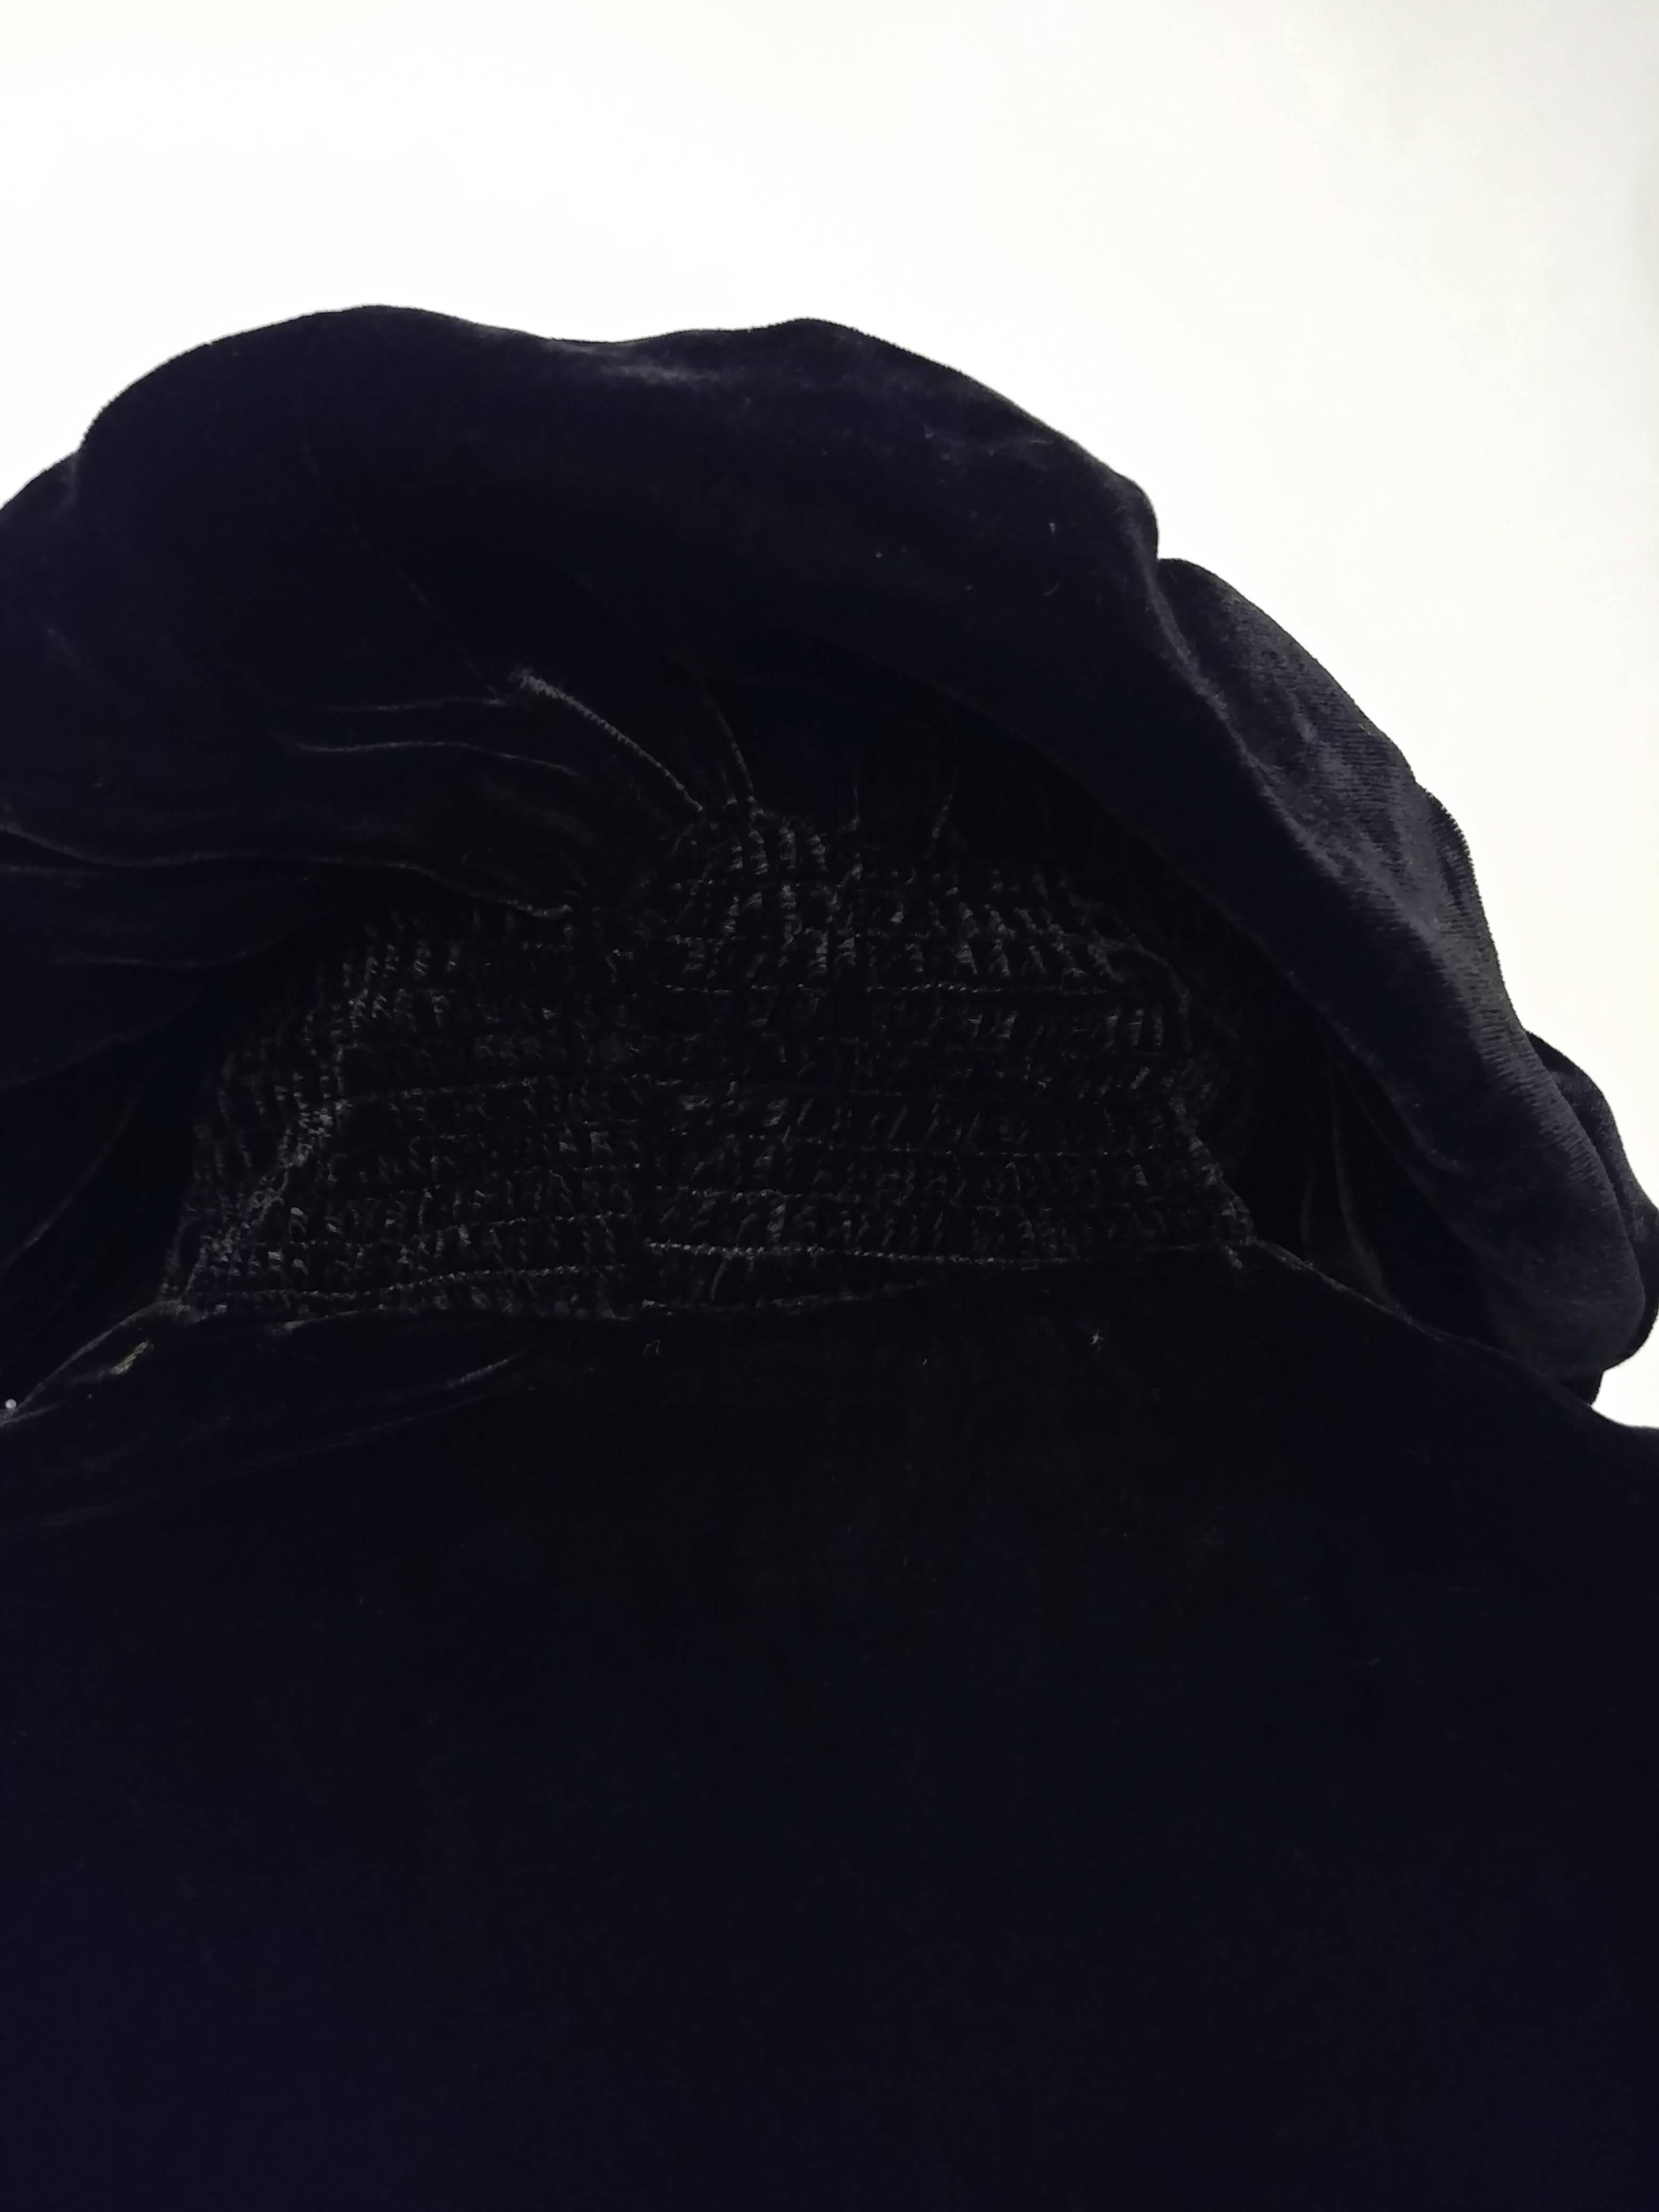 Women's 1940s Black Silk Velvet Opera Coat